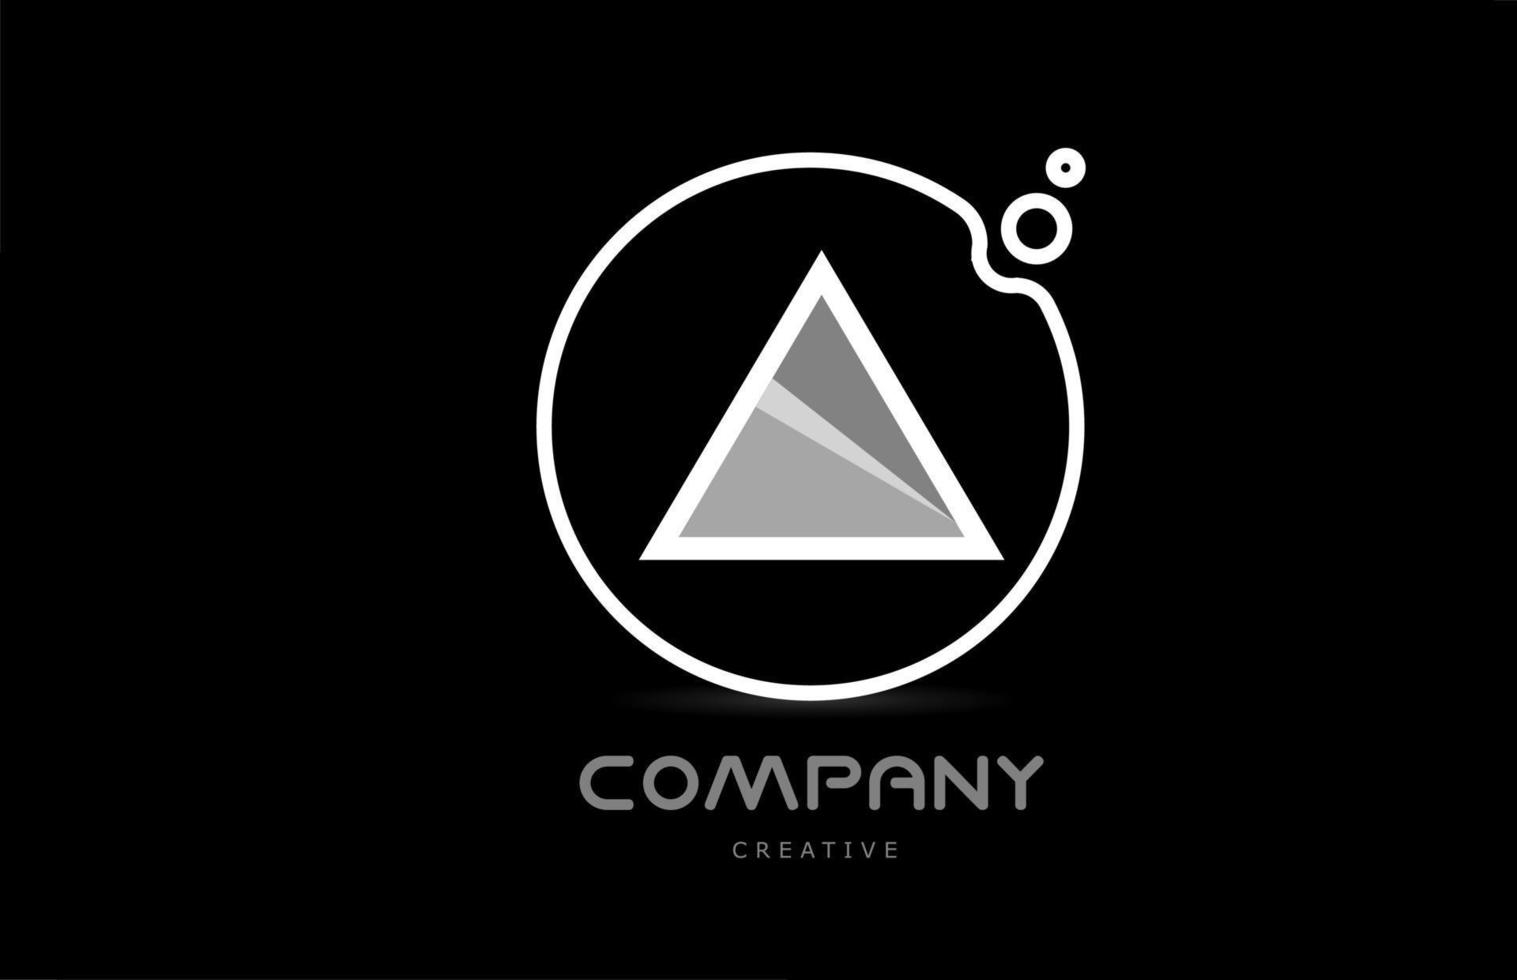 blanco y negro un icono de logotipo de letra del alfabeto geométrico con círculo. plantilla creativa para empresa y negocio vector